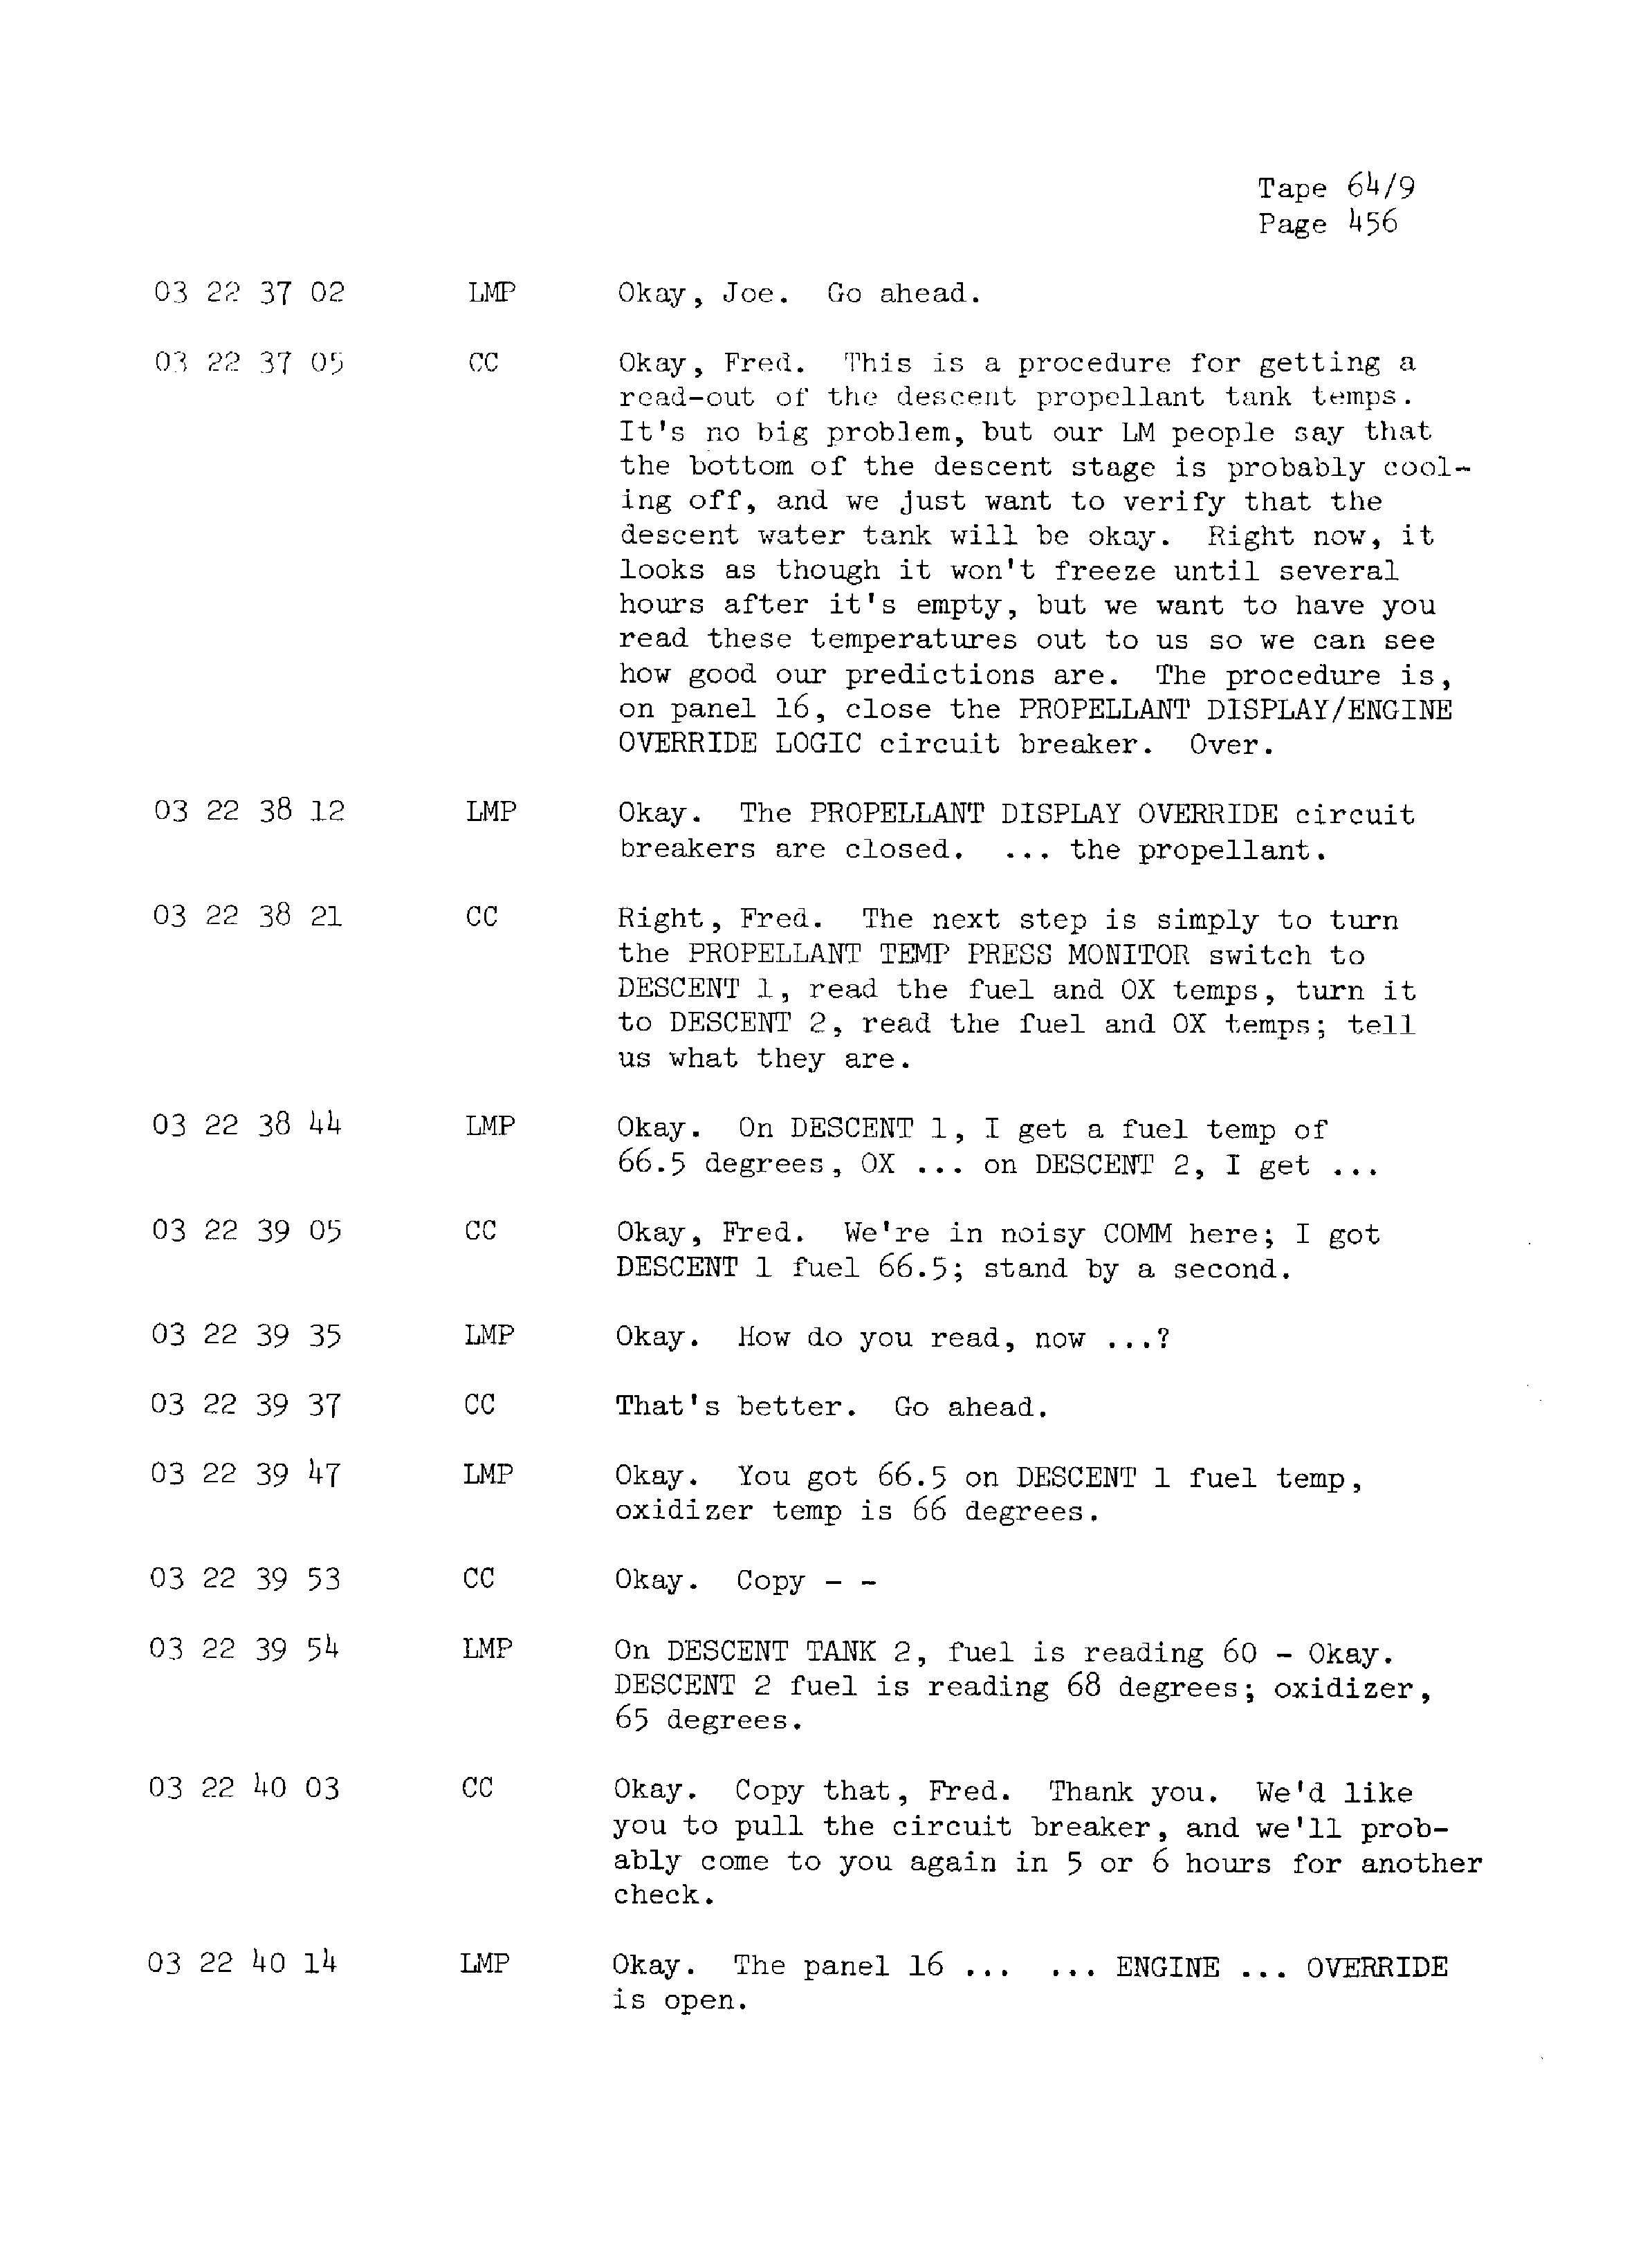 Page 463 of Apollo 13’s original transcript